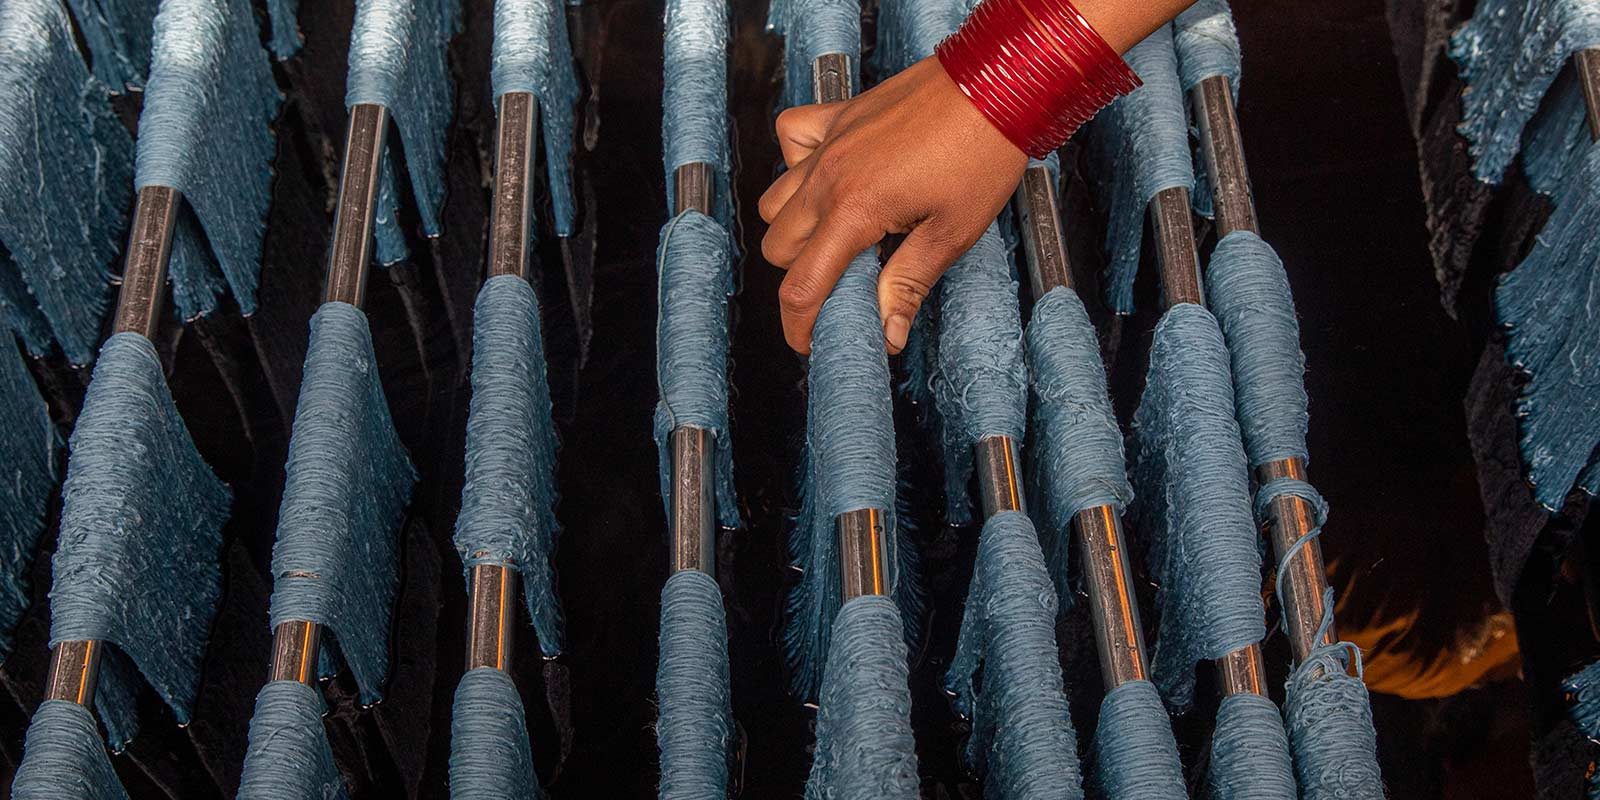 Hand mit rotem Armreif berührt blaue Garnrollen auf Metallstangen in einer Textilmanufaktur.